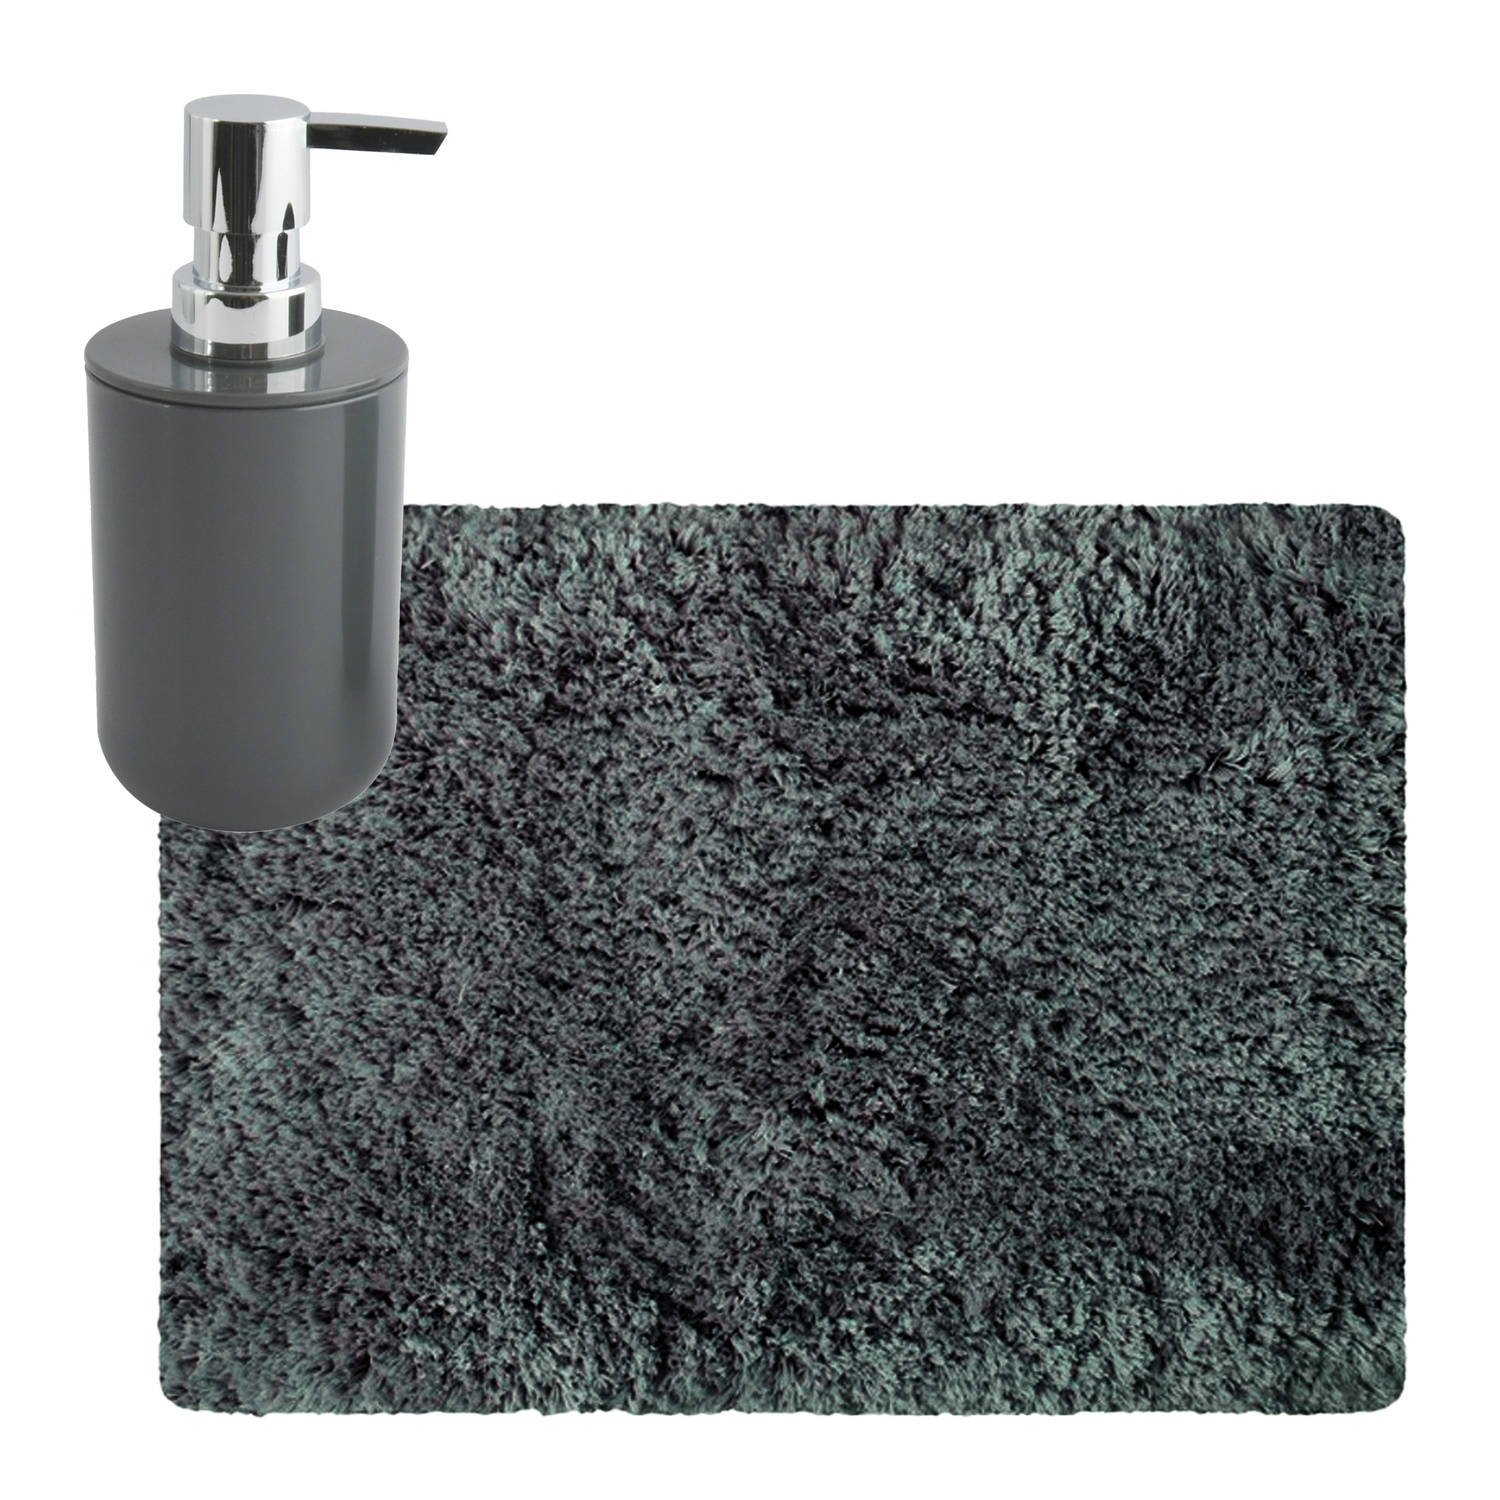 MSV badkamer droogloop tapijt Langharig 50 x 70 cm incl zeeppompje zelfde kleur donkergrijs Badmatje